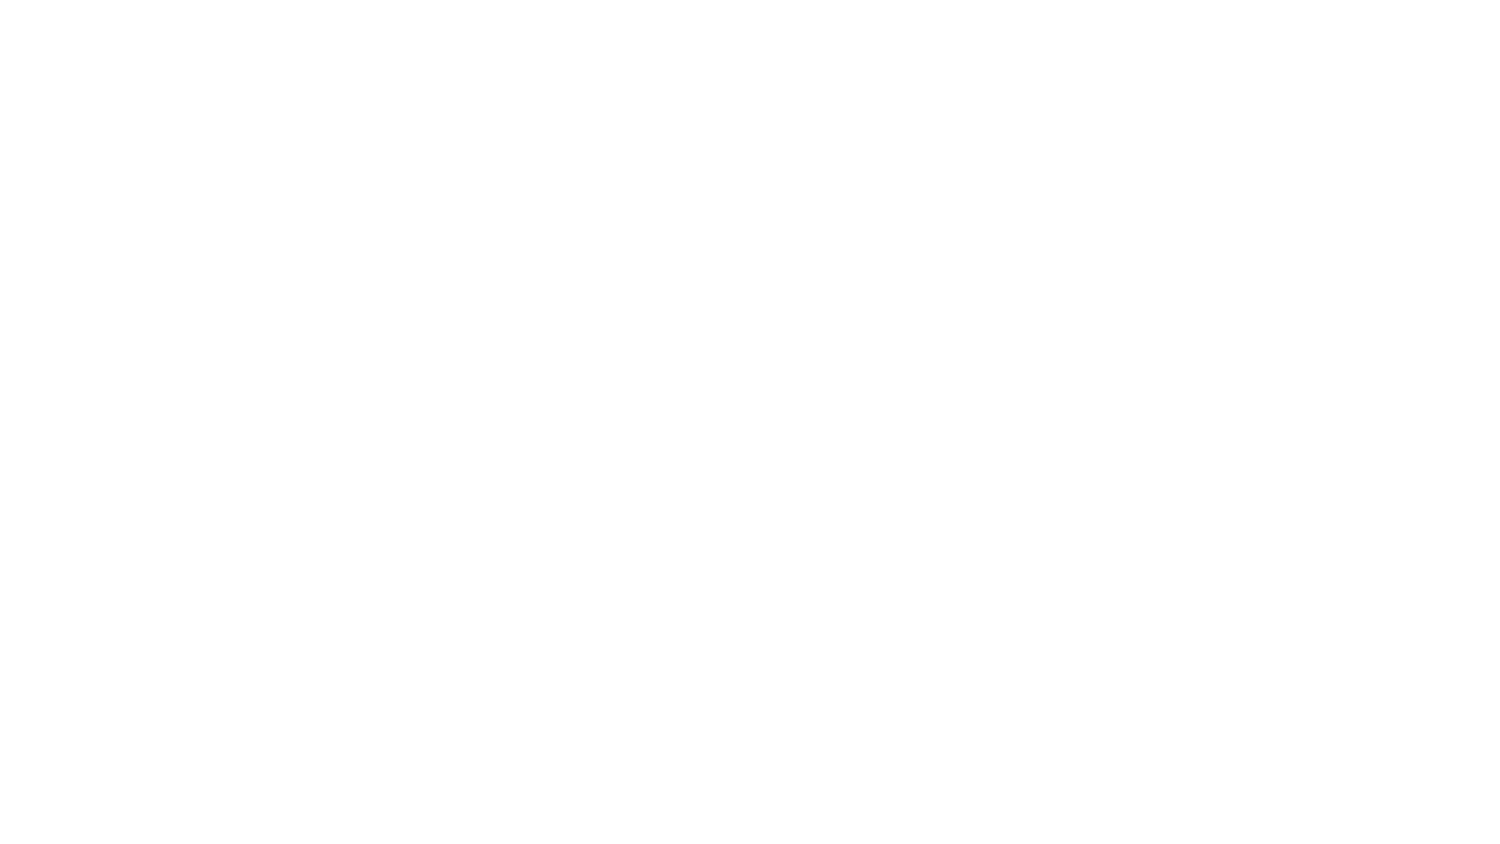 Beez Neez Recording